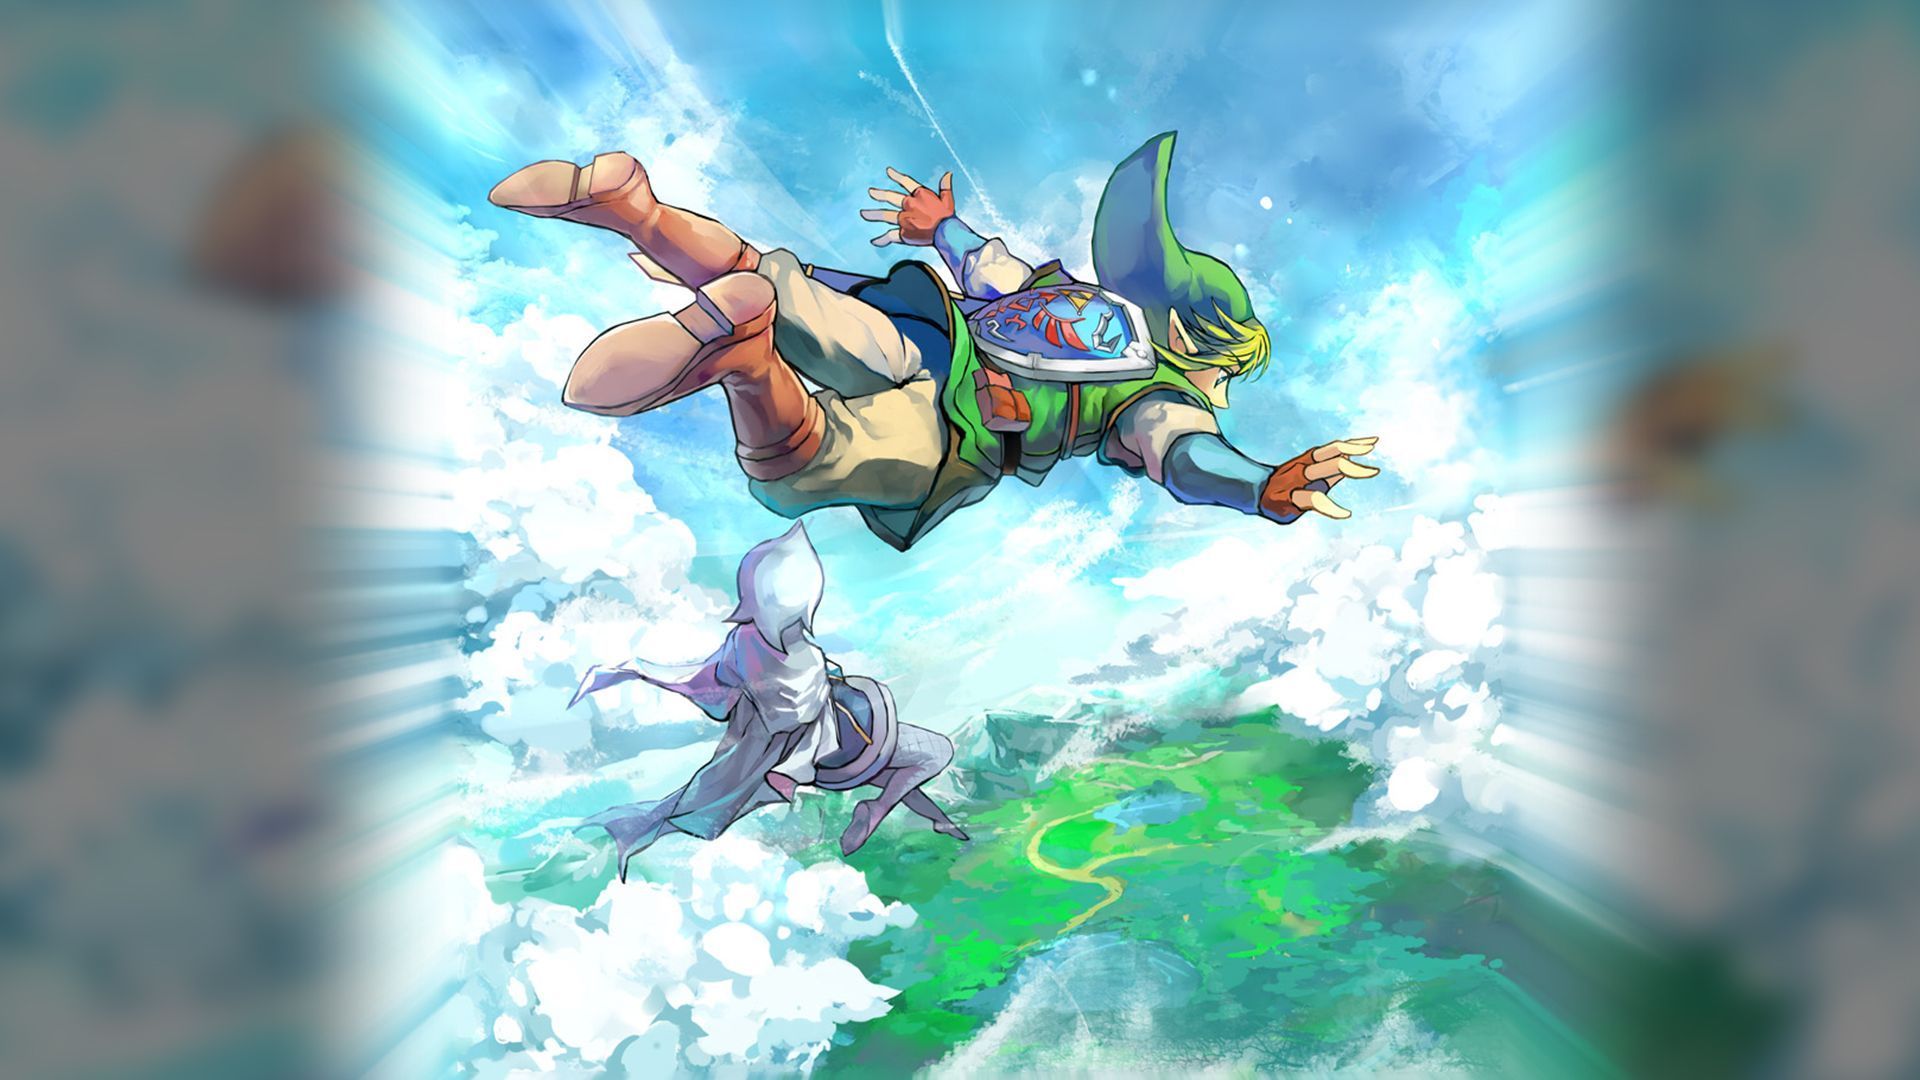 32 The Legend Of Zelda: Skyward Sword HD Wallpapers | Backgrounds ...